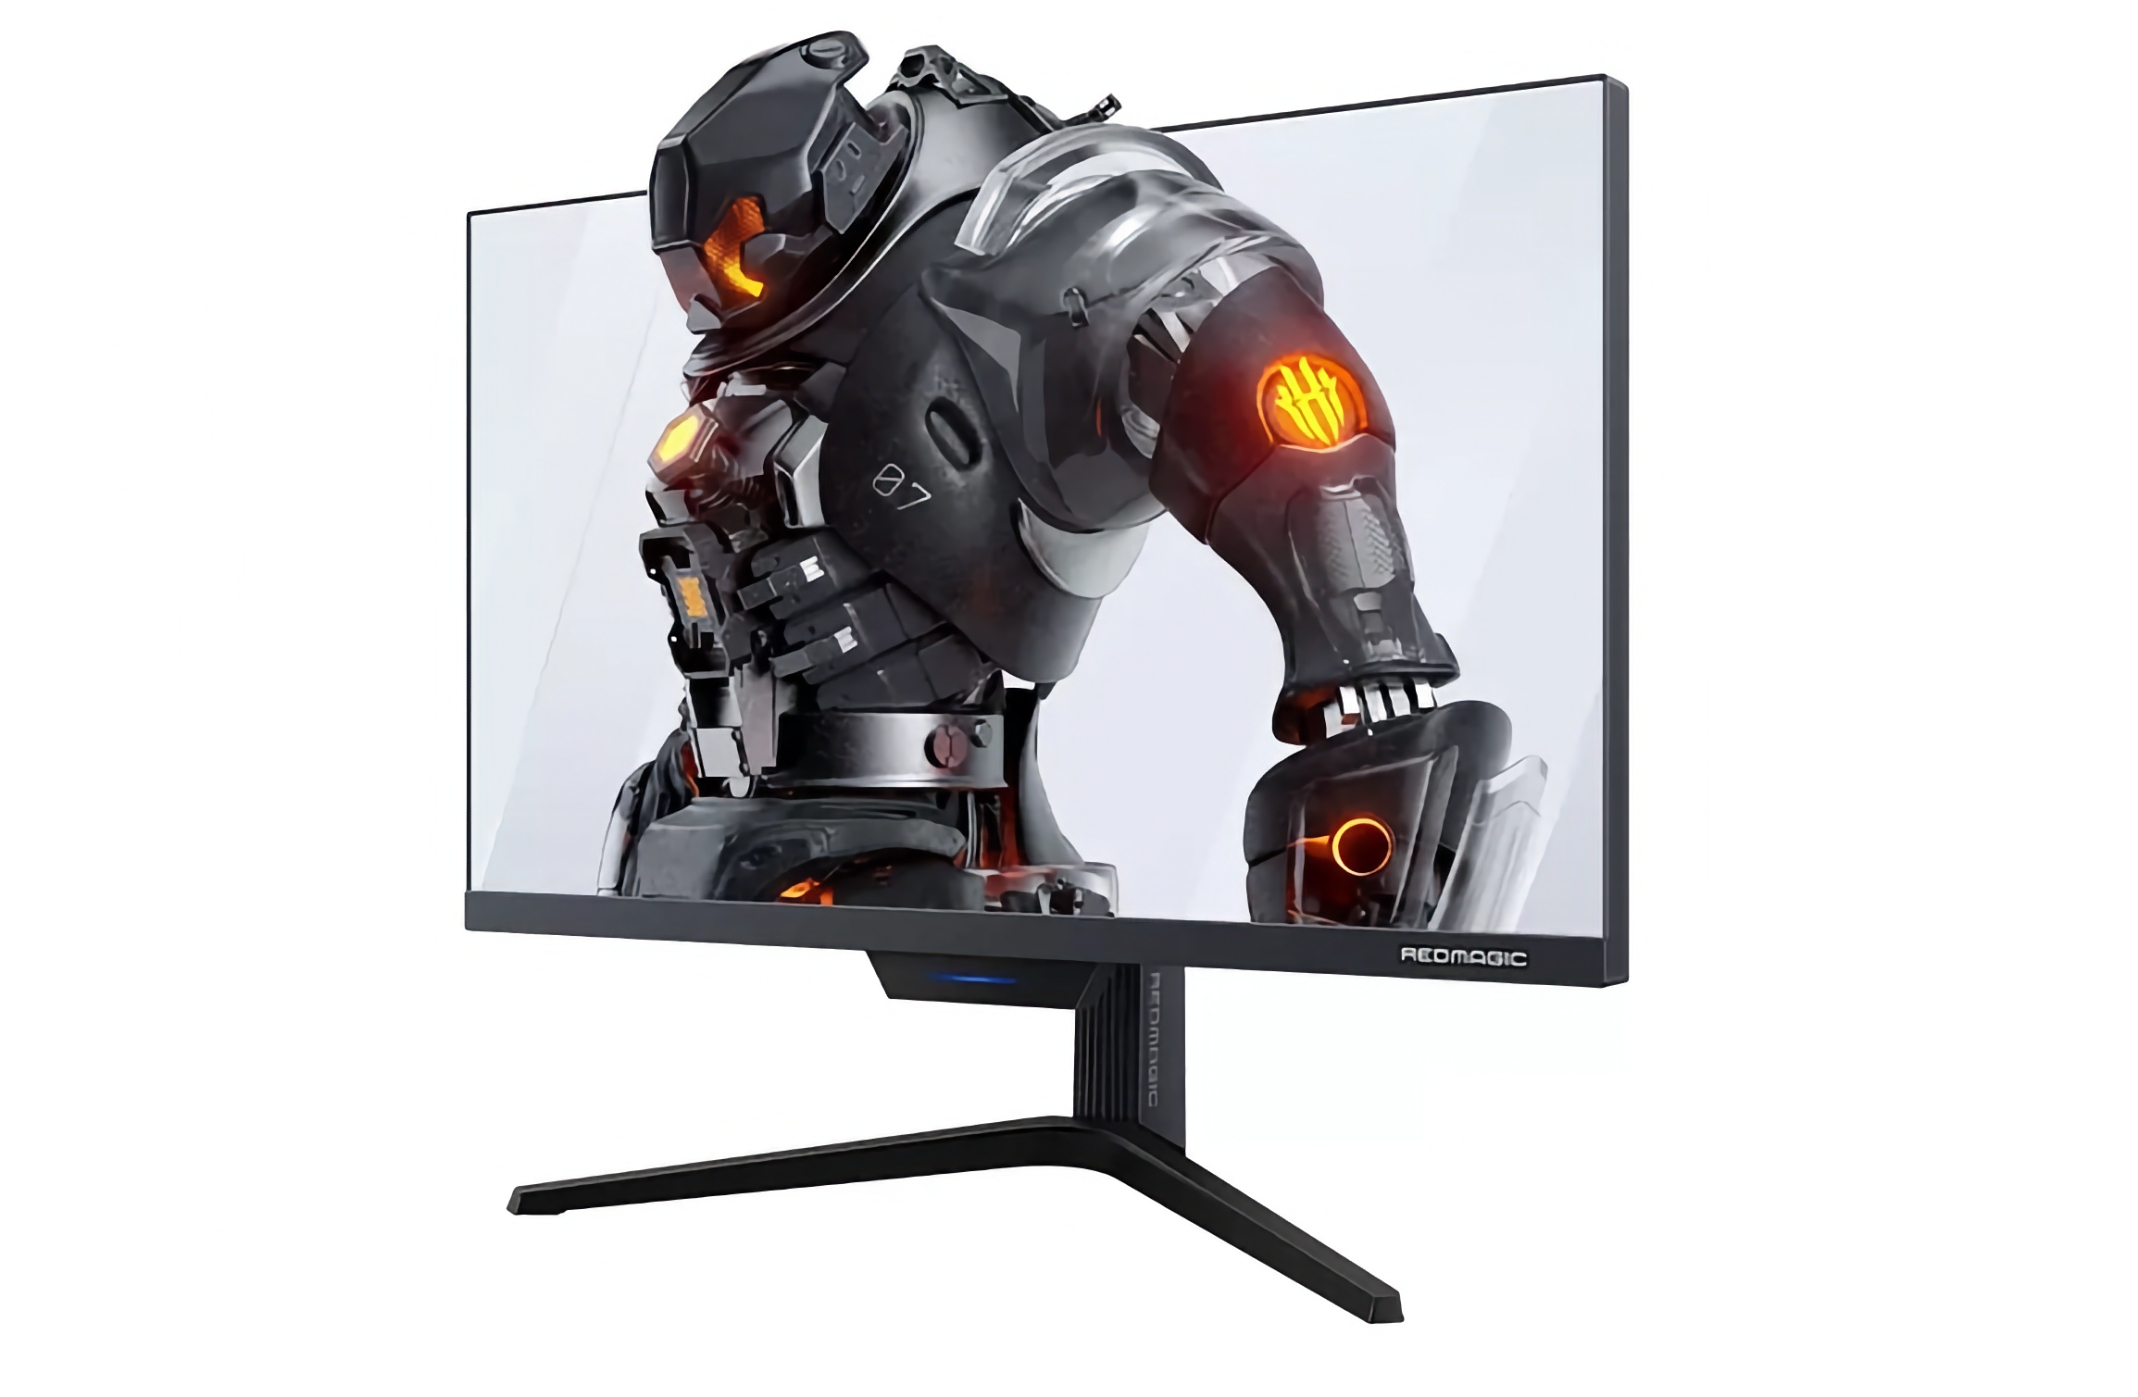 Nubia ha annunciato un monitor da gioco Red Magic con schermo da 27 pollici, risoluzione 2K e supporto per 240 Hz